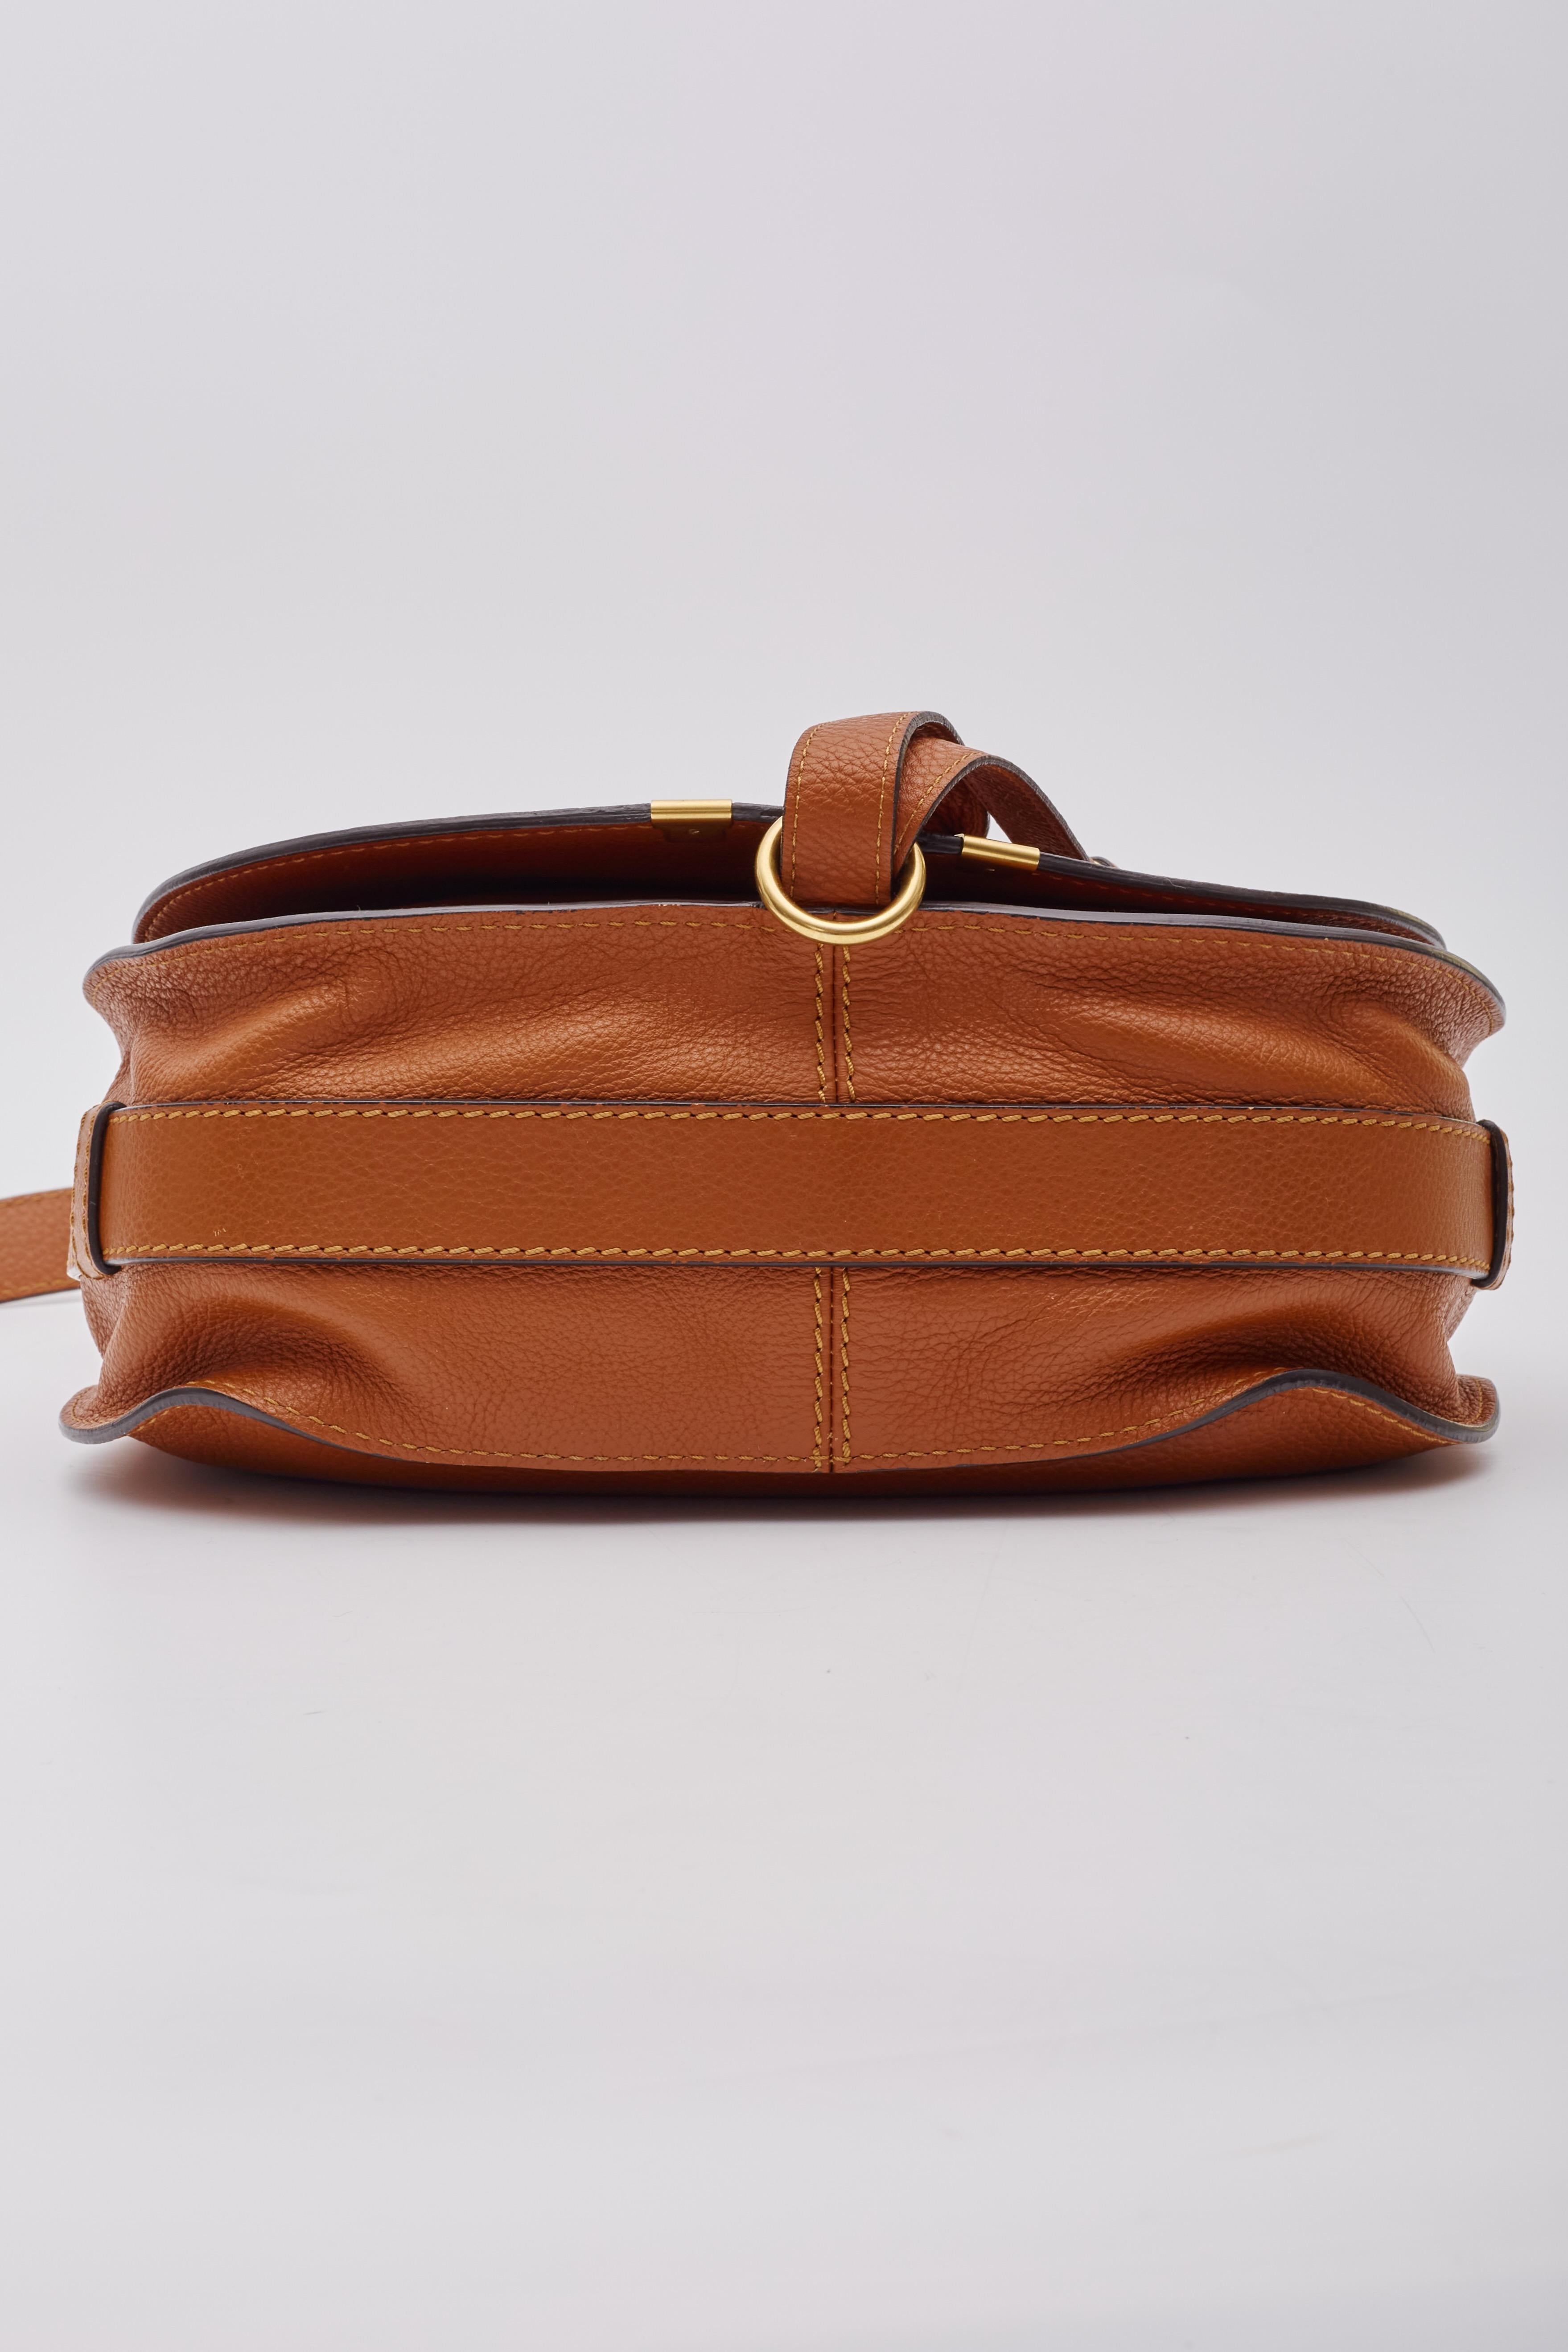 Chloe Caramel Leather Marcie Crossbody Bag Medium For Sale 8